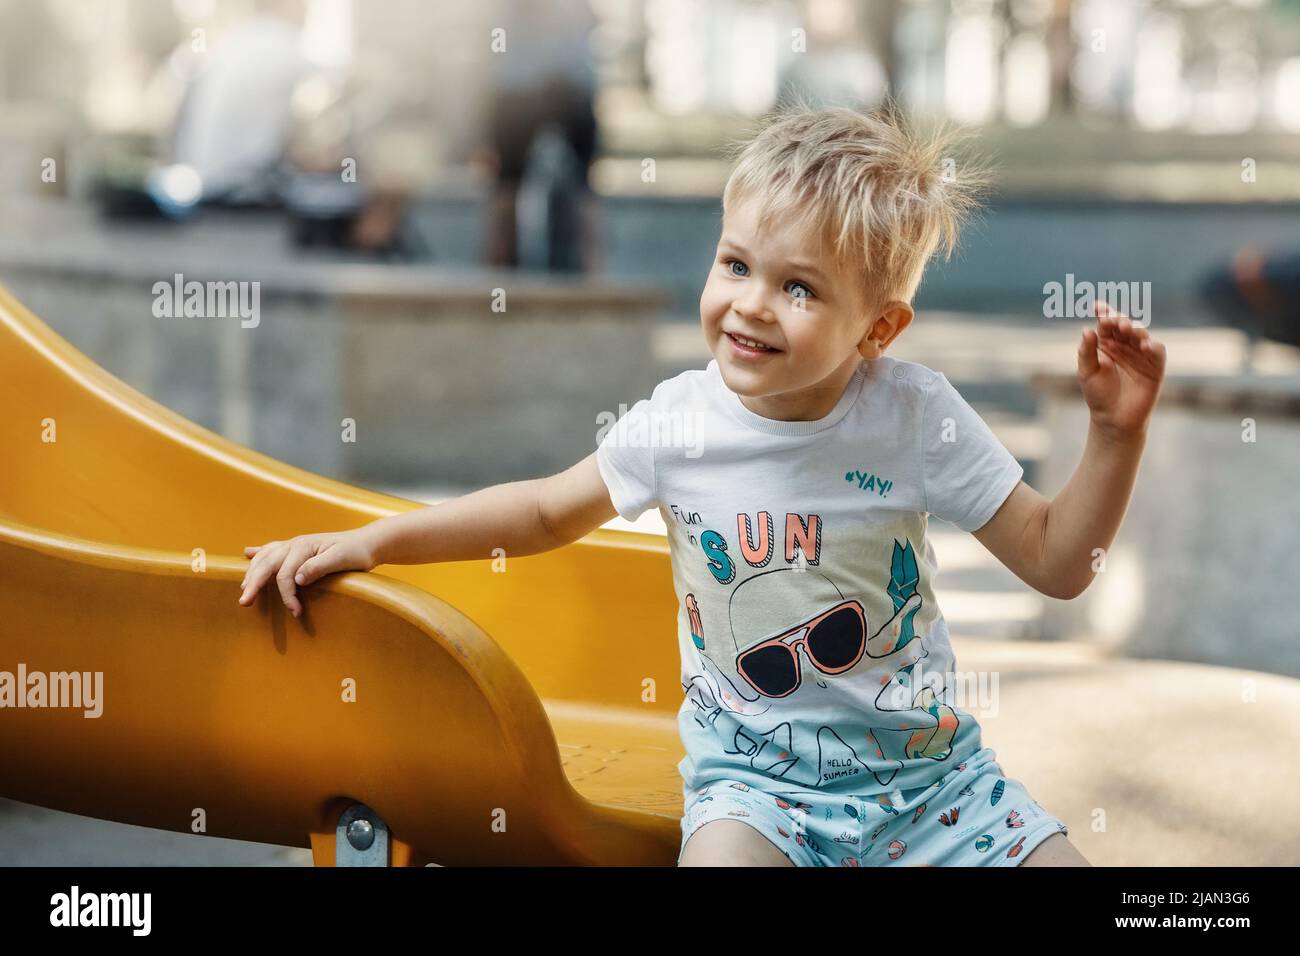 Ein fröhlicher, lächelnder, sympathischer kleiner Junge auf dem Spielplatz auf einem gelben Schieber. Das Haar des Kindes ist elektrisiert und borstend. Stockfoto